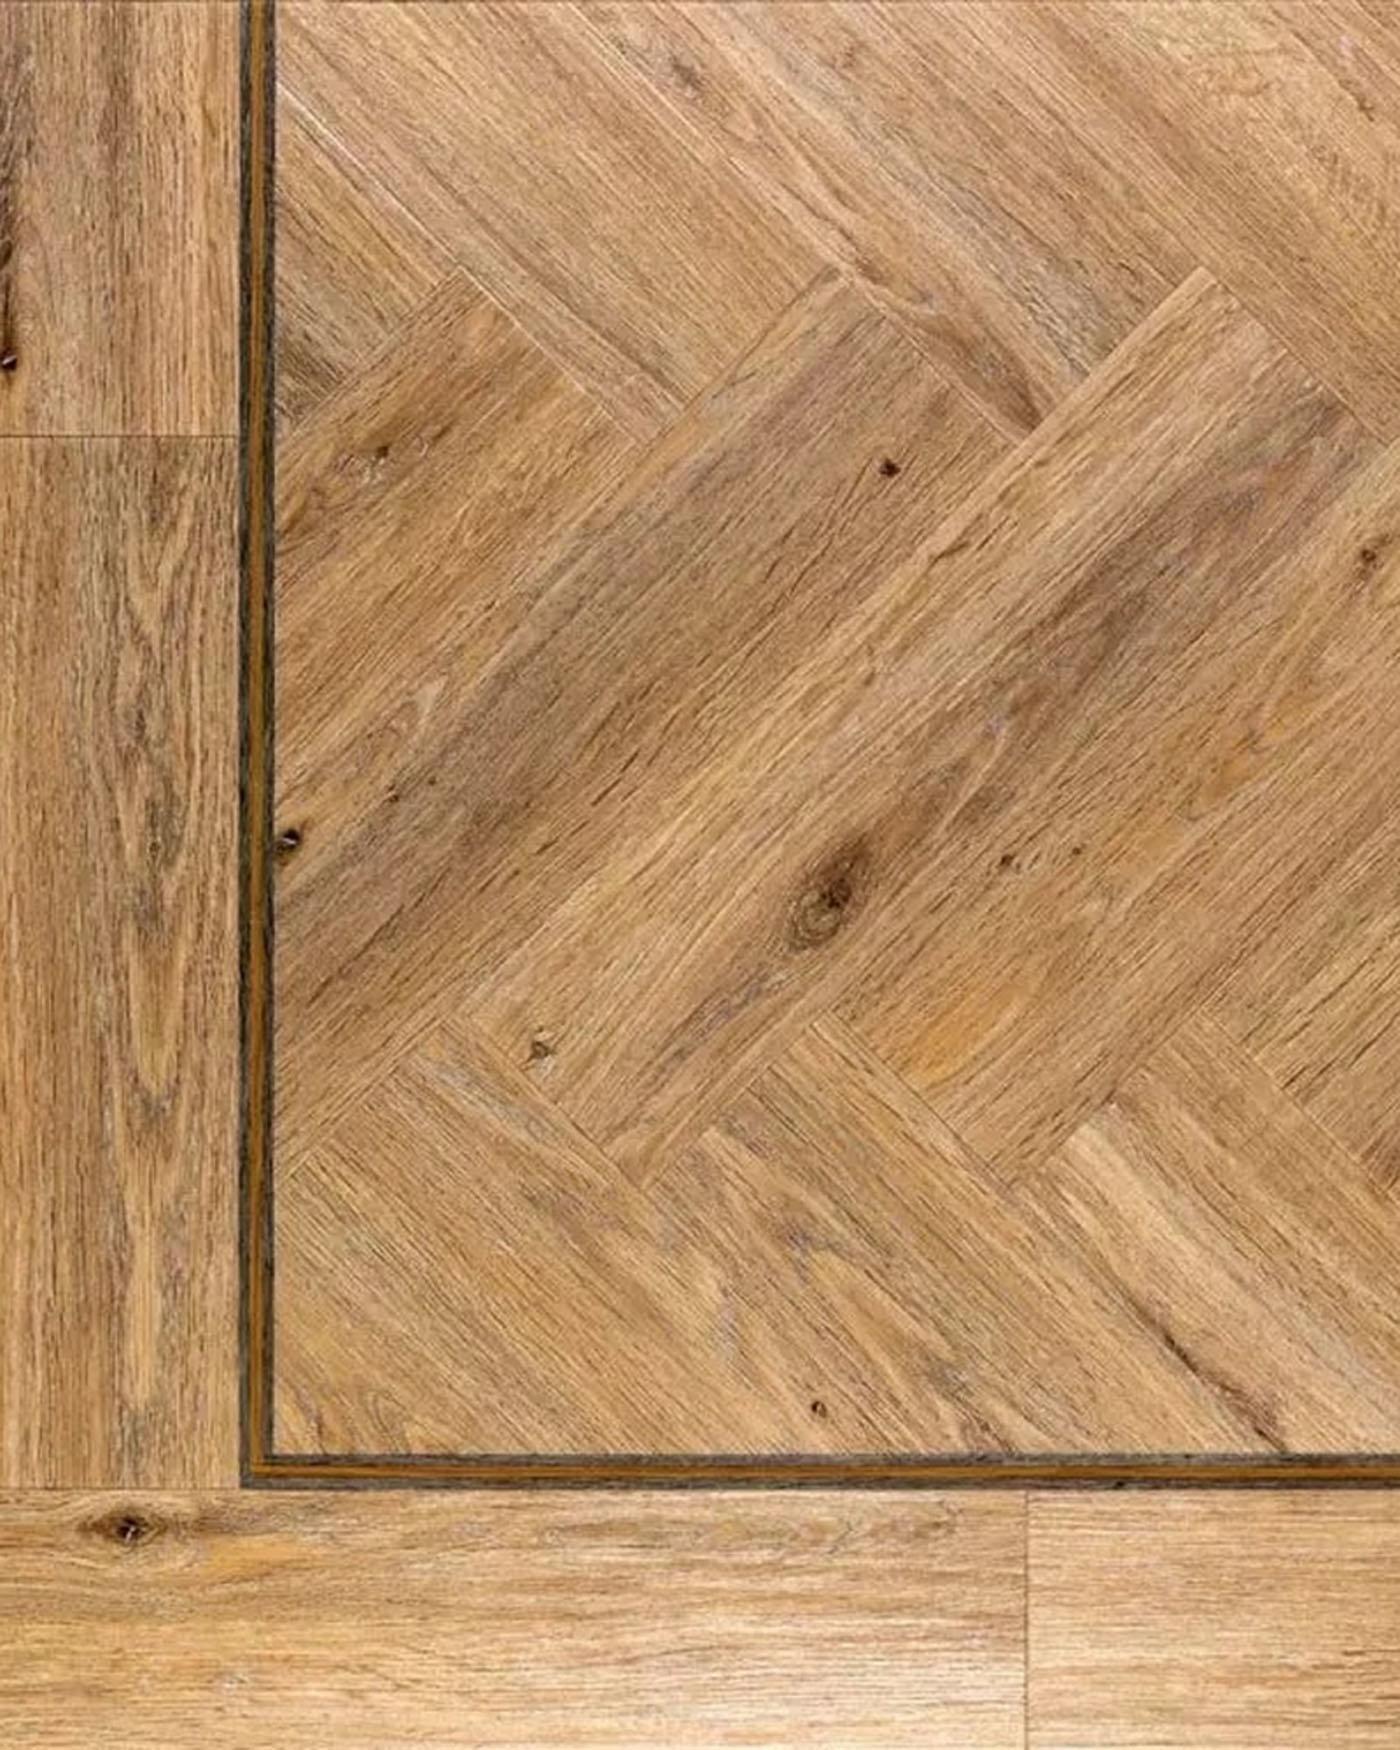 Herringbone Ambiance LVT flooring in Washed Oak